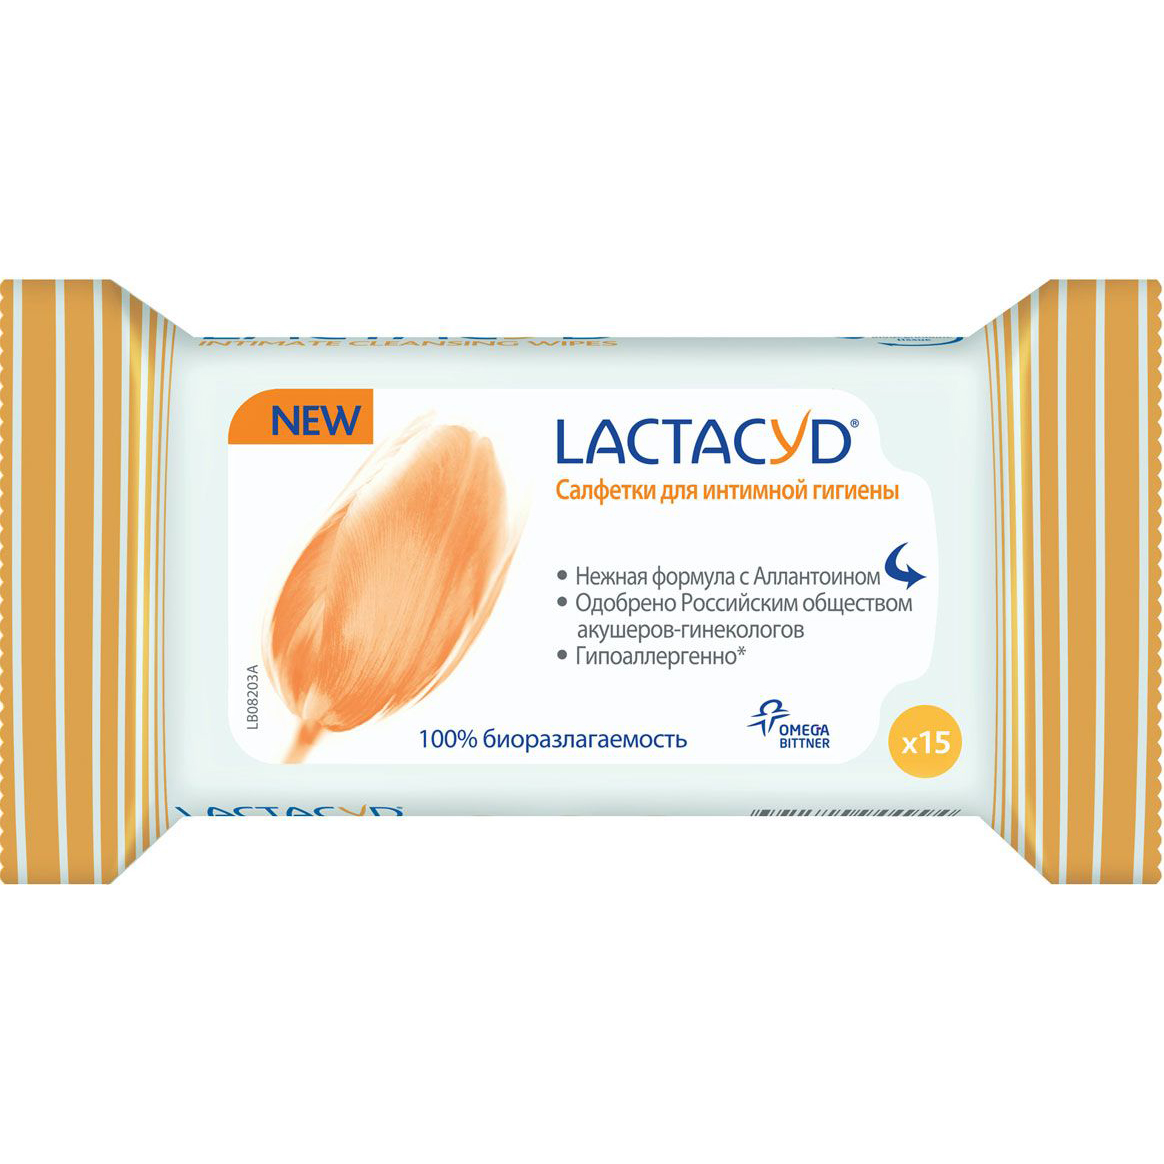 Салфетки для интимной гигиены Lactacyd 15 шт я самая влажные салфетки для интимной гигиены алоэ 15